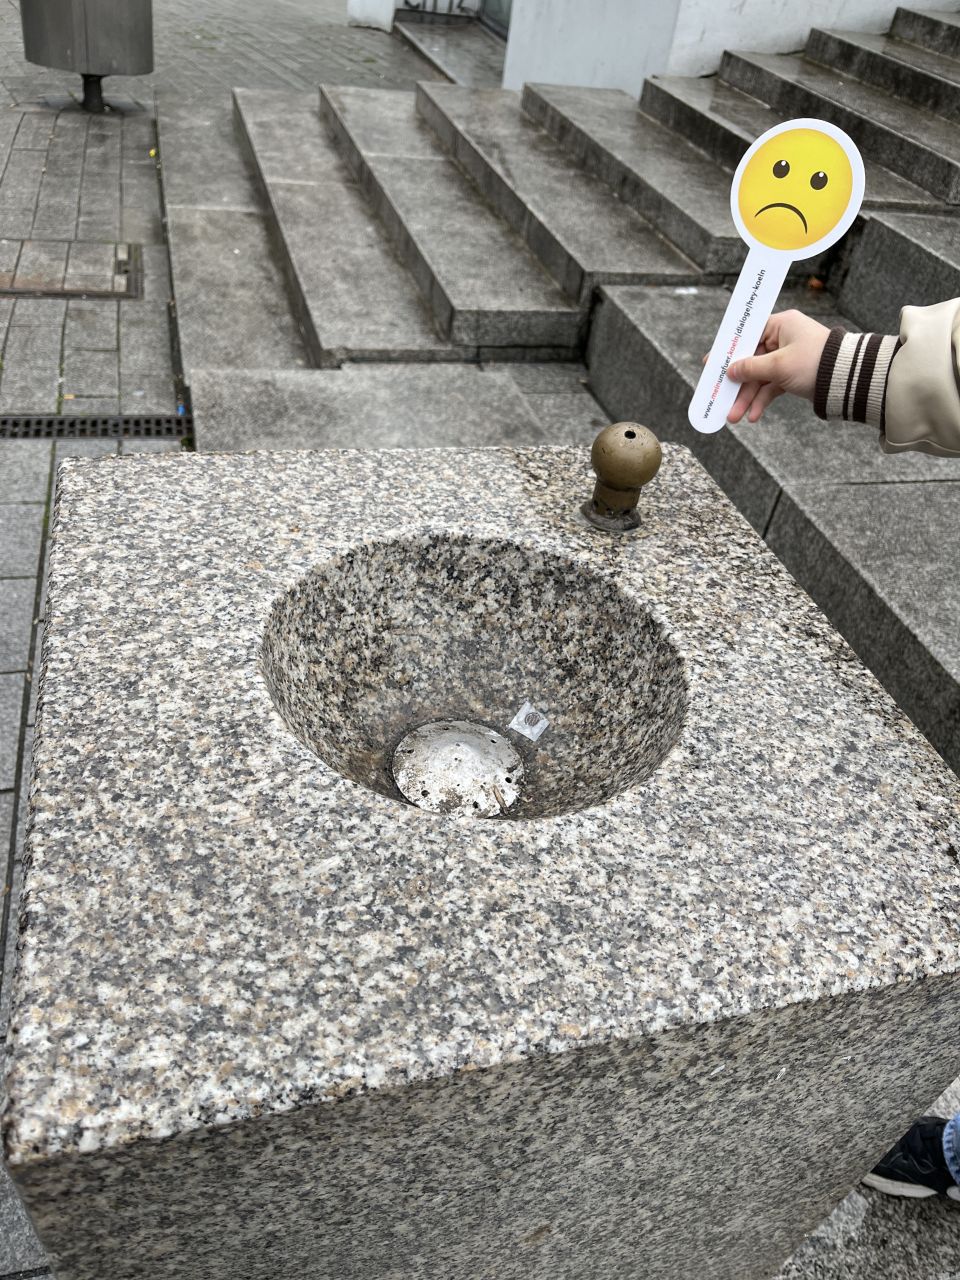 Ein Steinbrunnen, der nicht läuft. Ein Mensch hält eine Kelle mit einem traurigen Emoji ins Bild.